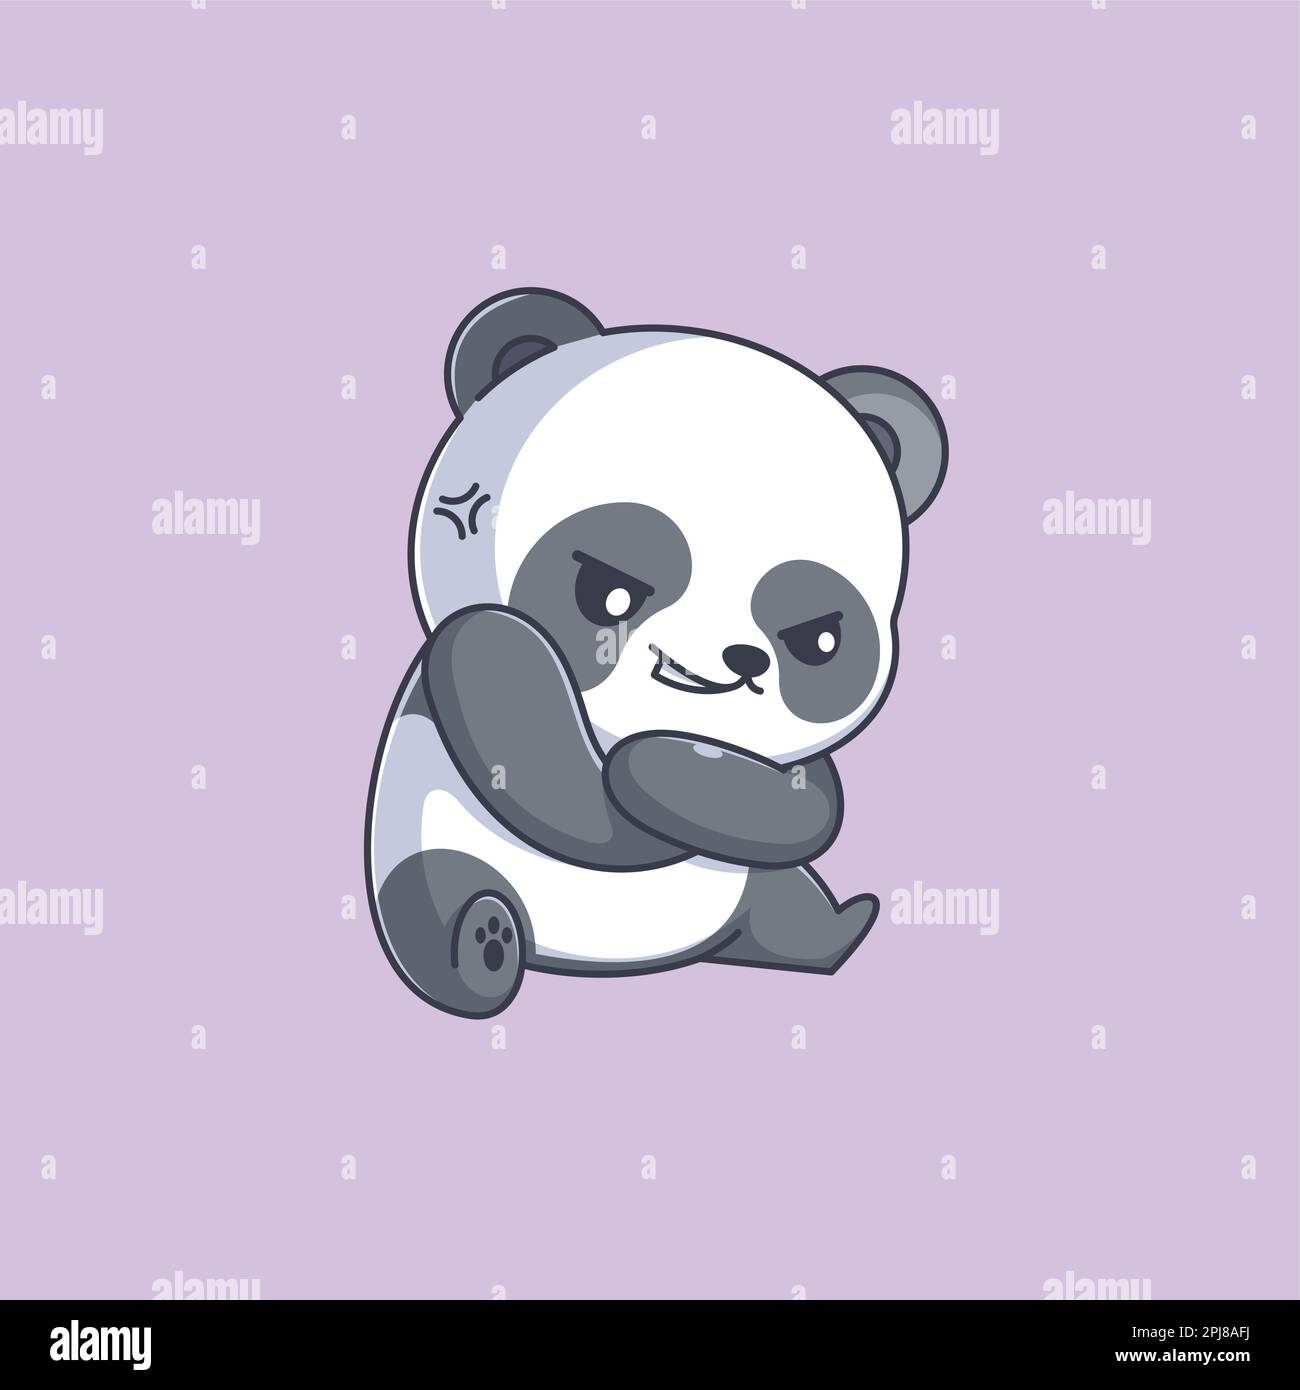 Cute panda angry cartoon design Stock Vector